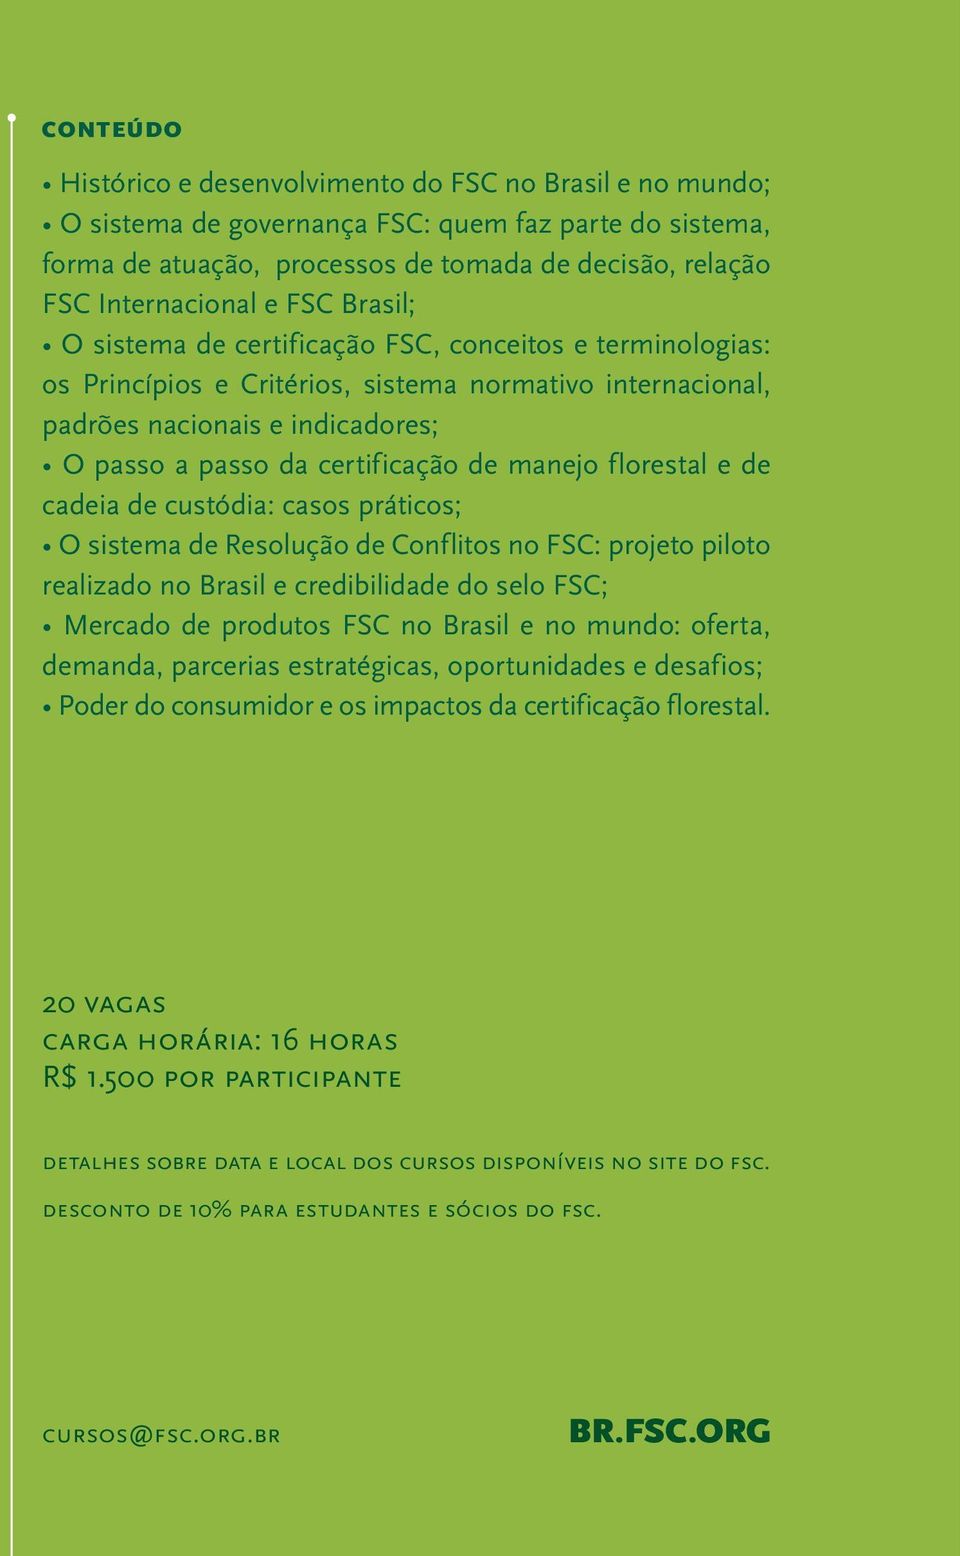 manejo florestal e de cadeia de custódia: casos práticos; O sistema de Resolução de Conflitos no FSC: projeto piloto realizado no Brasil e credibilidade do selo FSC; Mercado de produtos FSC no Brasil